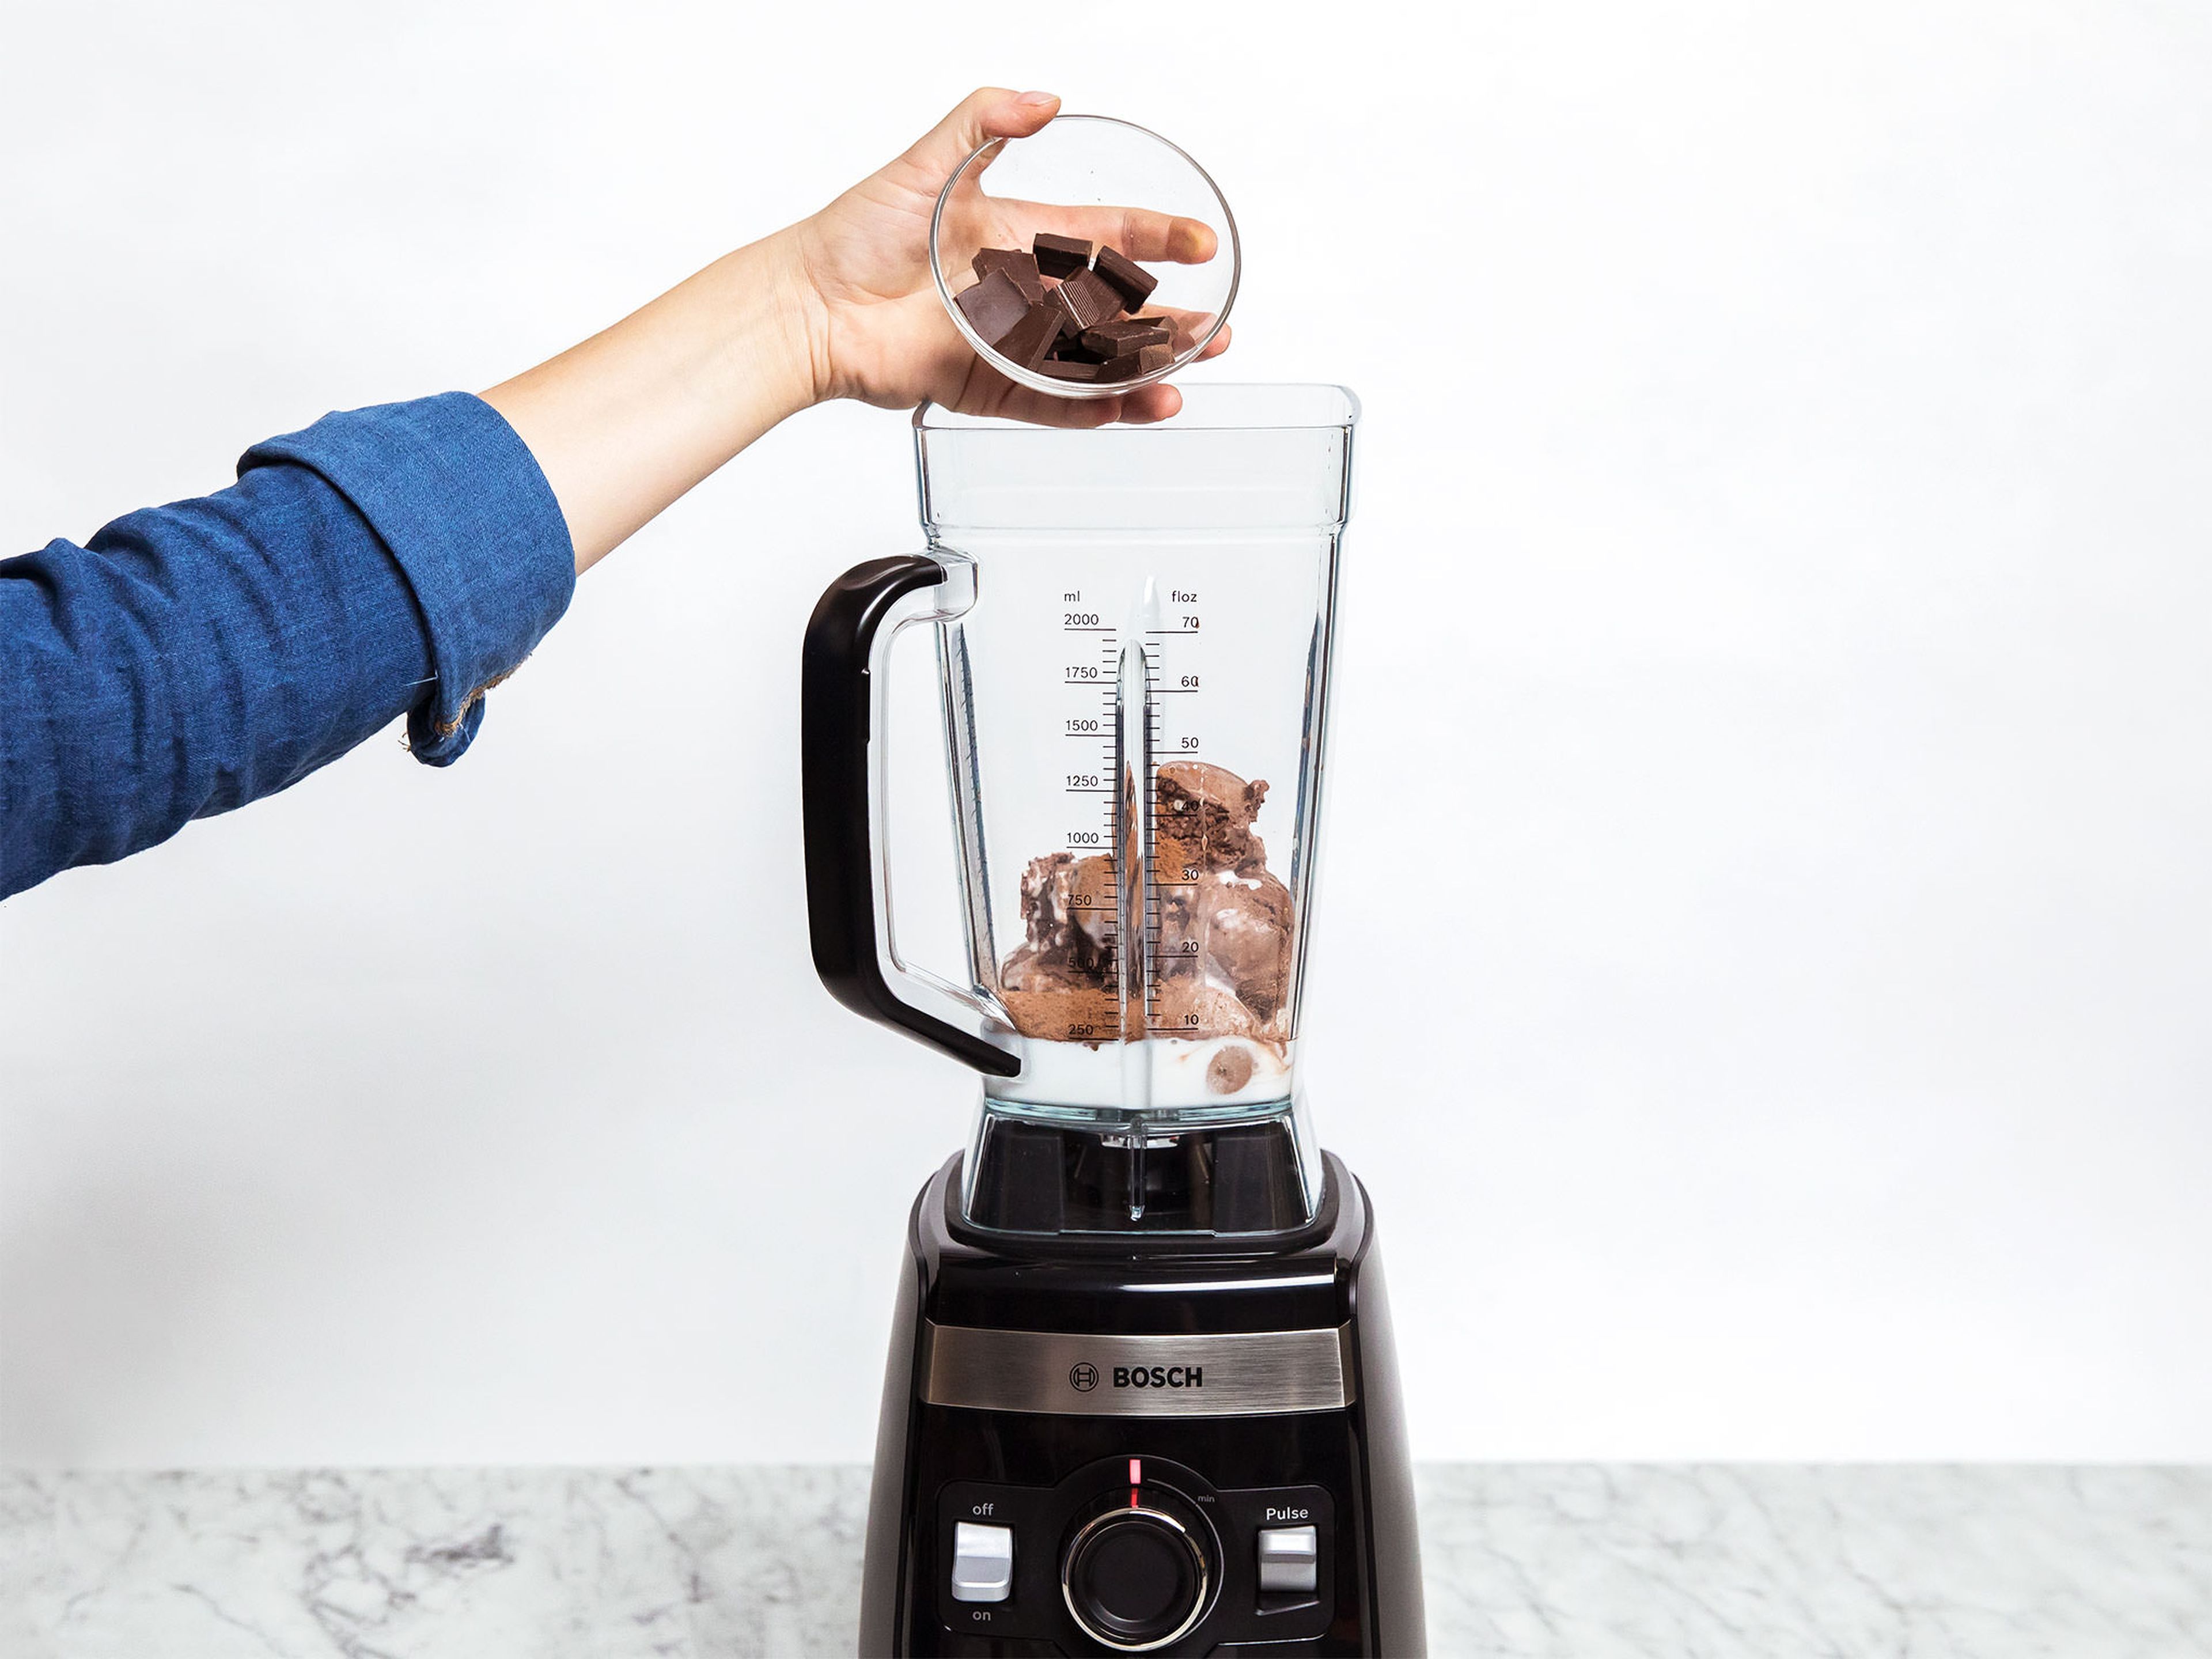 Schokoladeneis, Kokosmilch, Backkakao und Zartbitterschokolade in den Standmixer geben und mit der Shake-Funktion des Mixers cremig mixen.